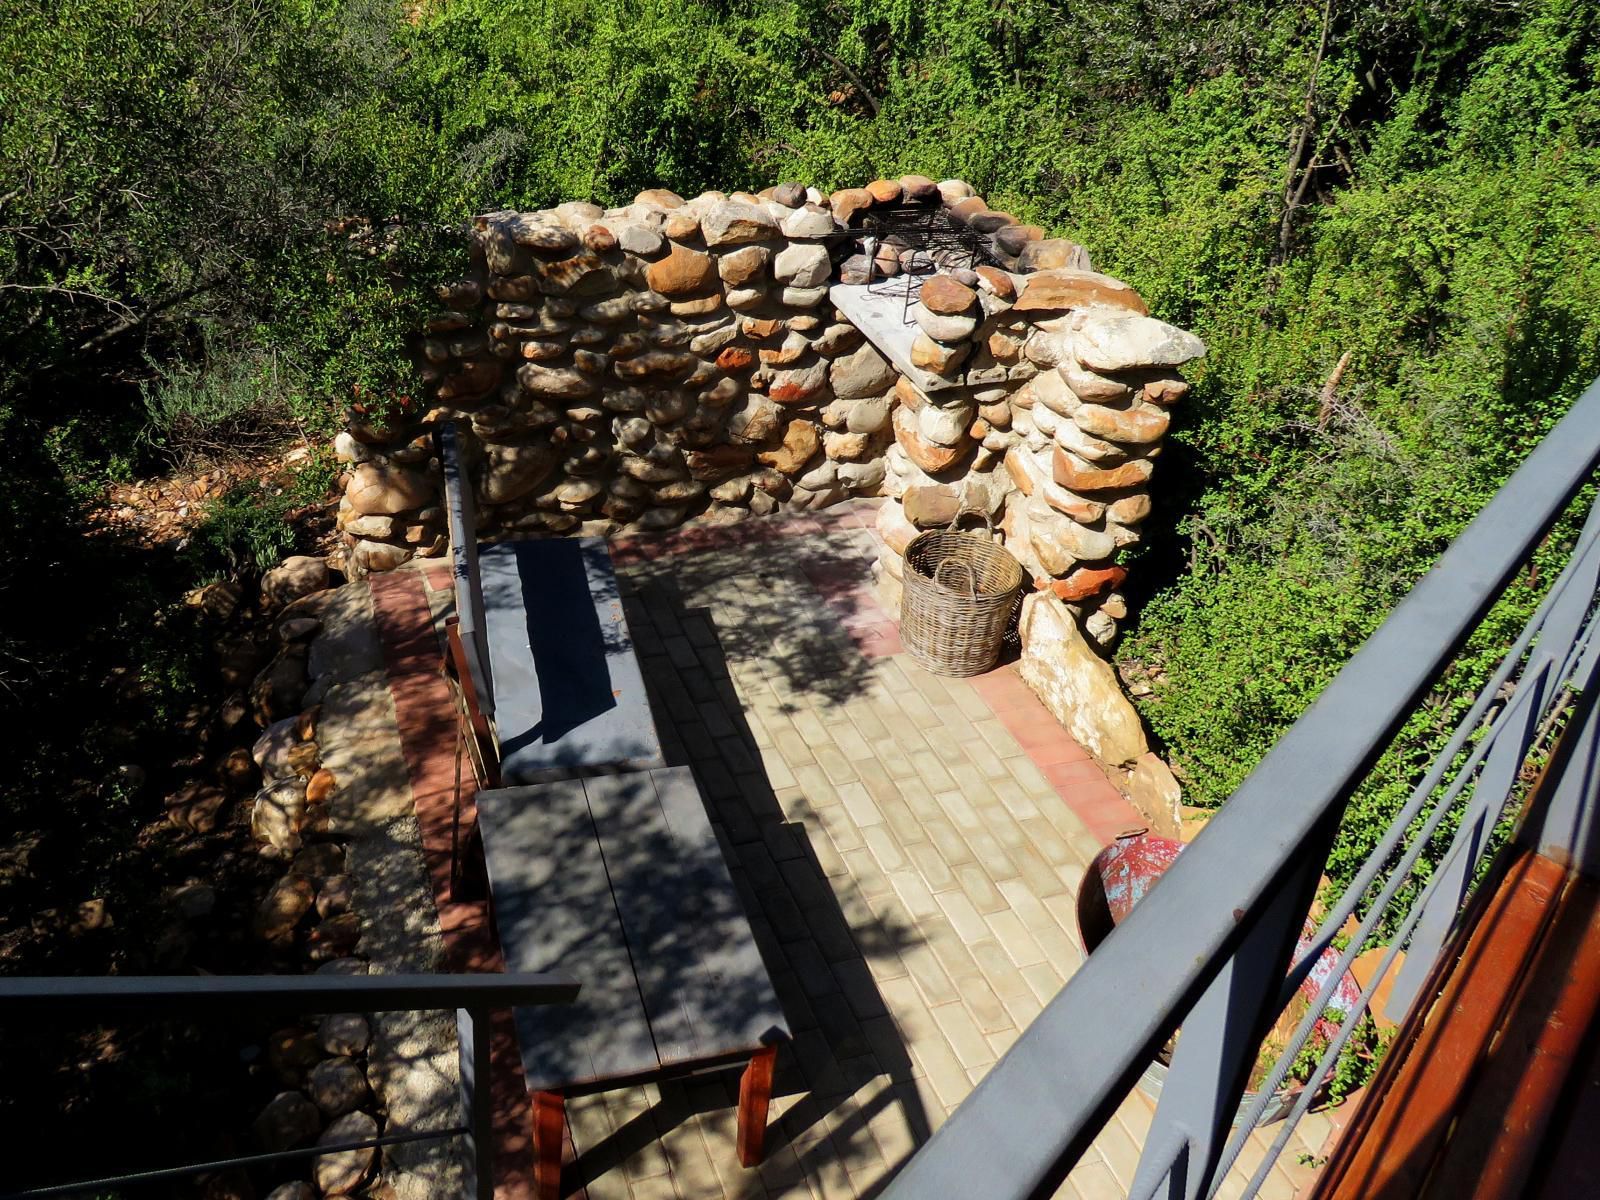 Klein Karoo Game Lodge Oudtshoorn Western Cape South Africa 